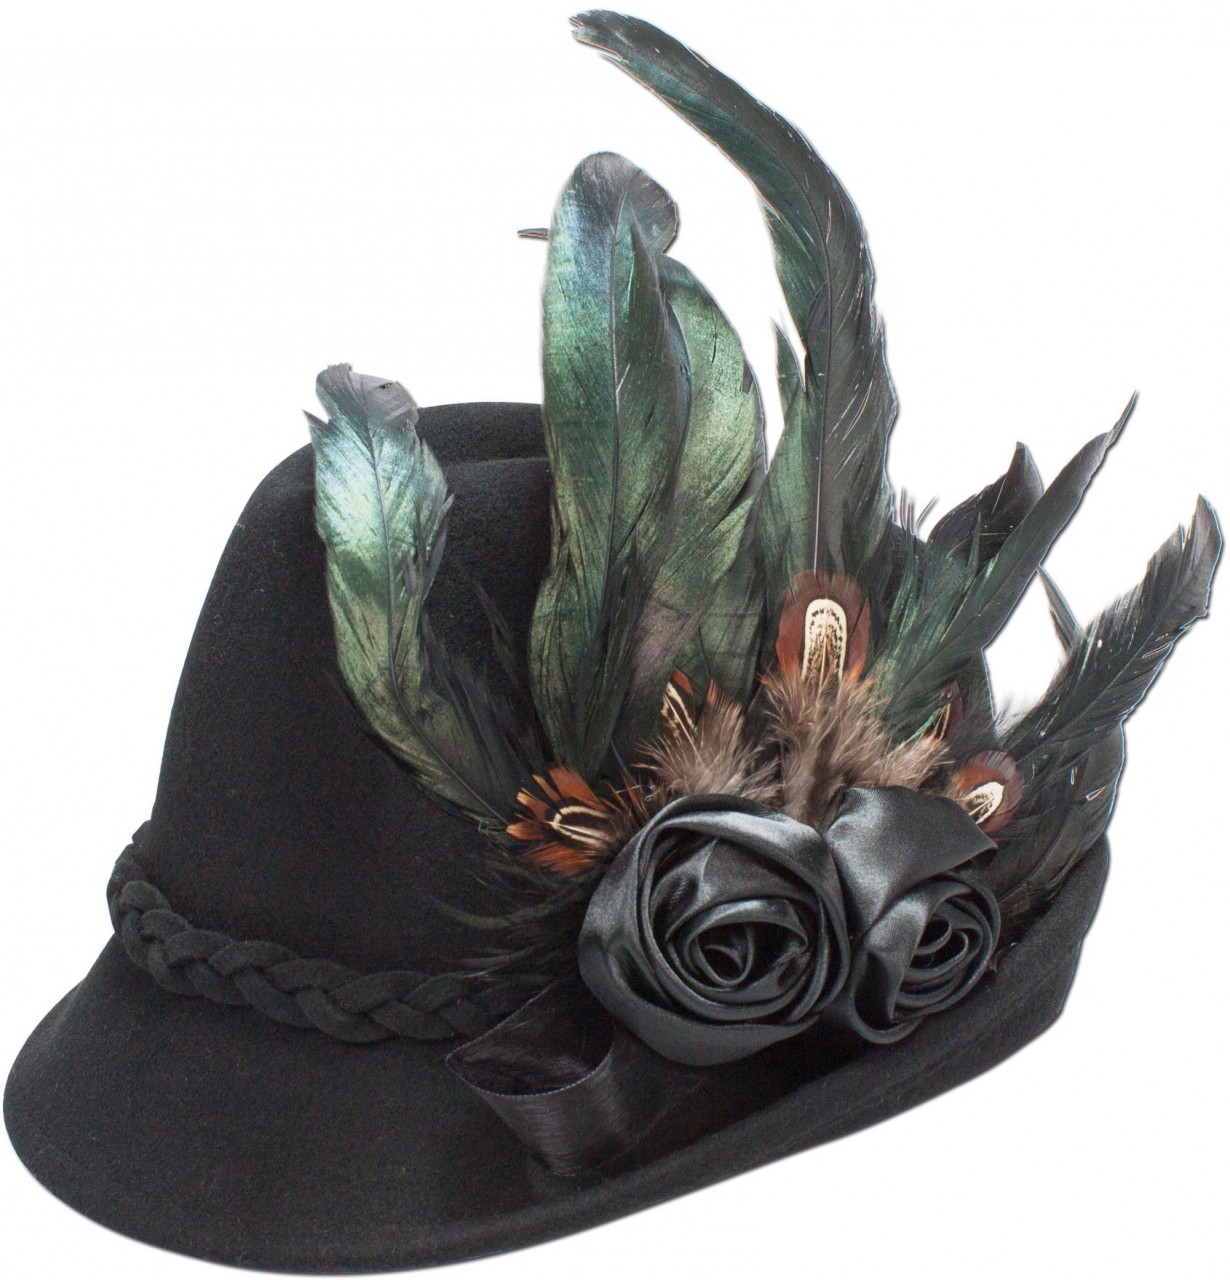 Filcowa czapka Rosalie czarna